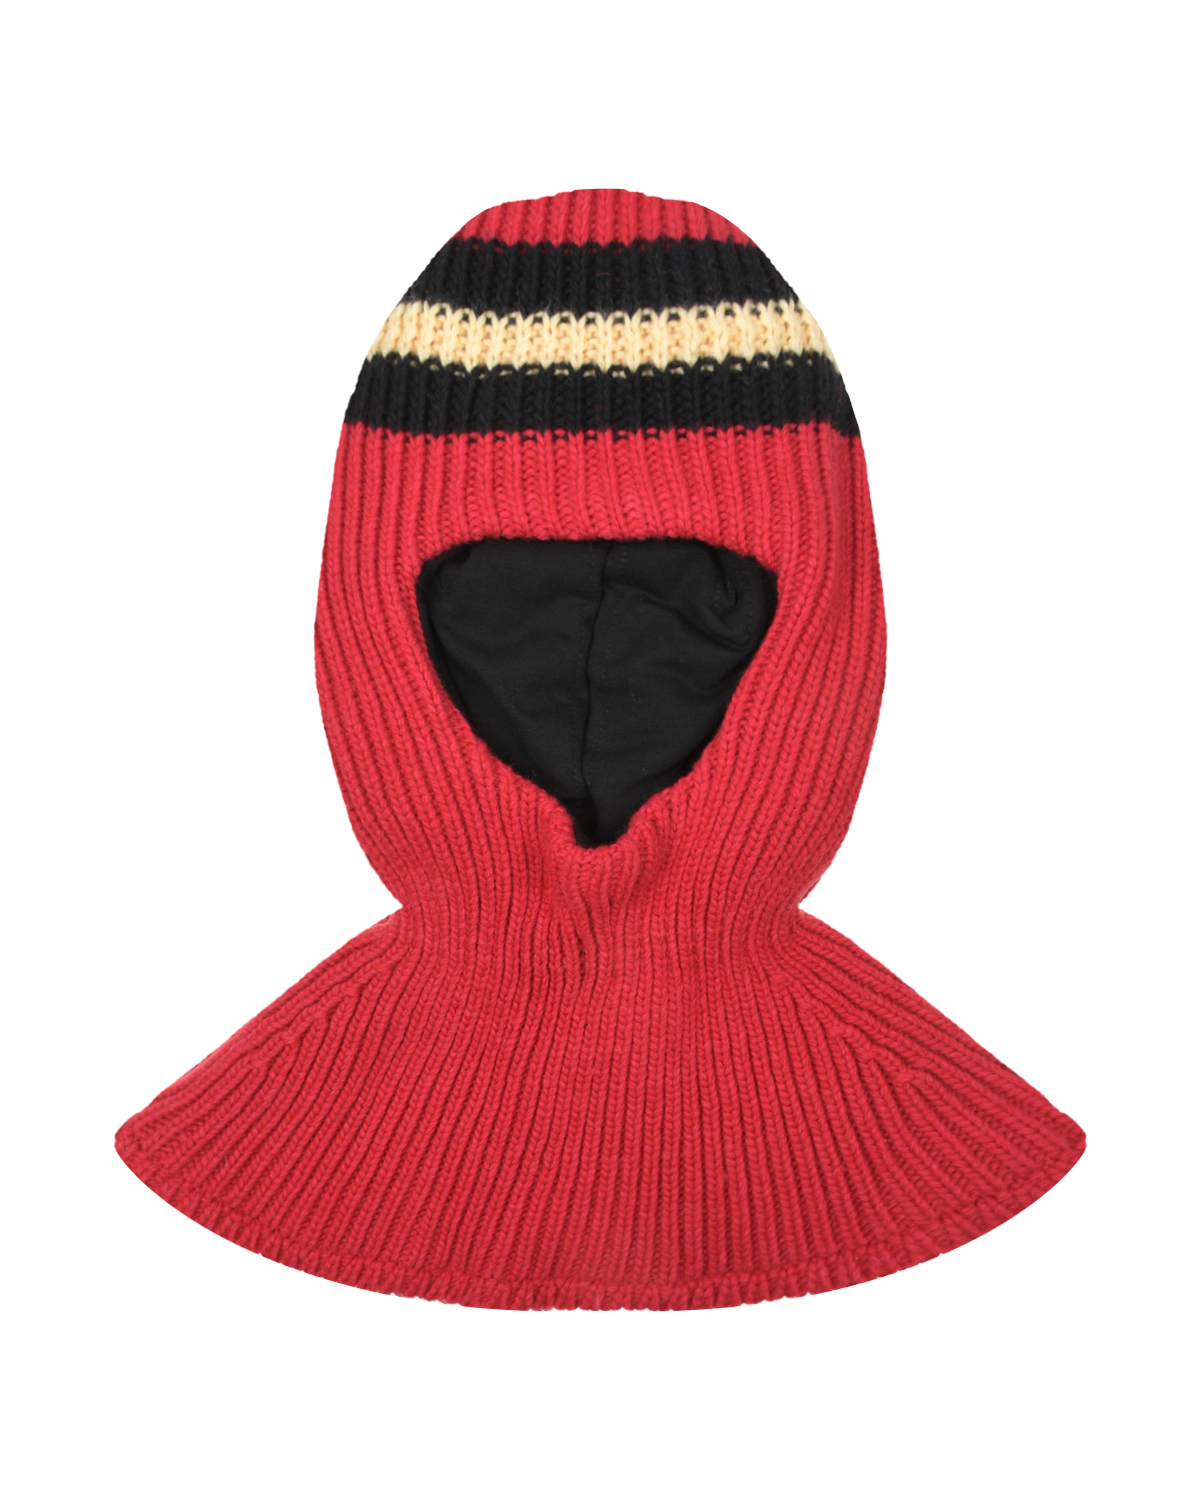 Красная шапка-шлем с черными полосками Chobi детская, размер 53, цвет красный